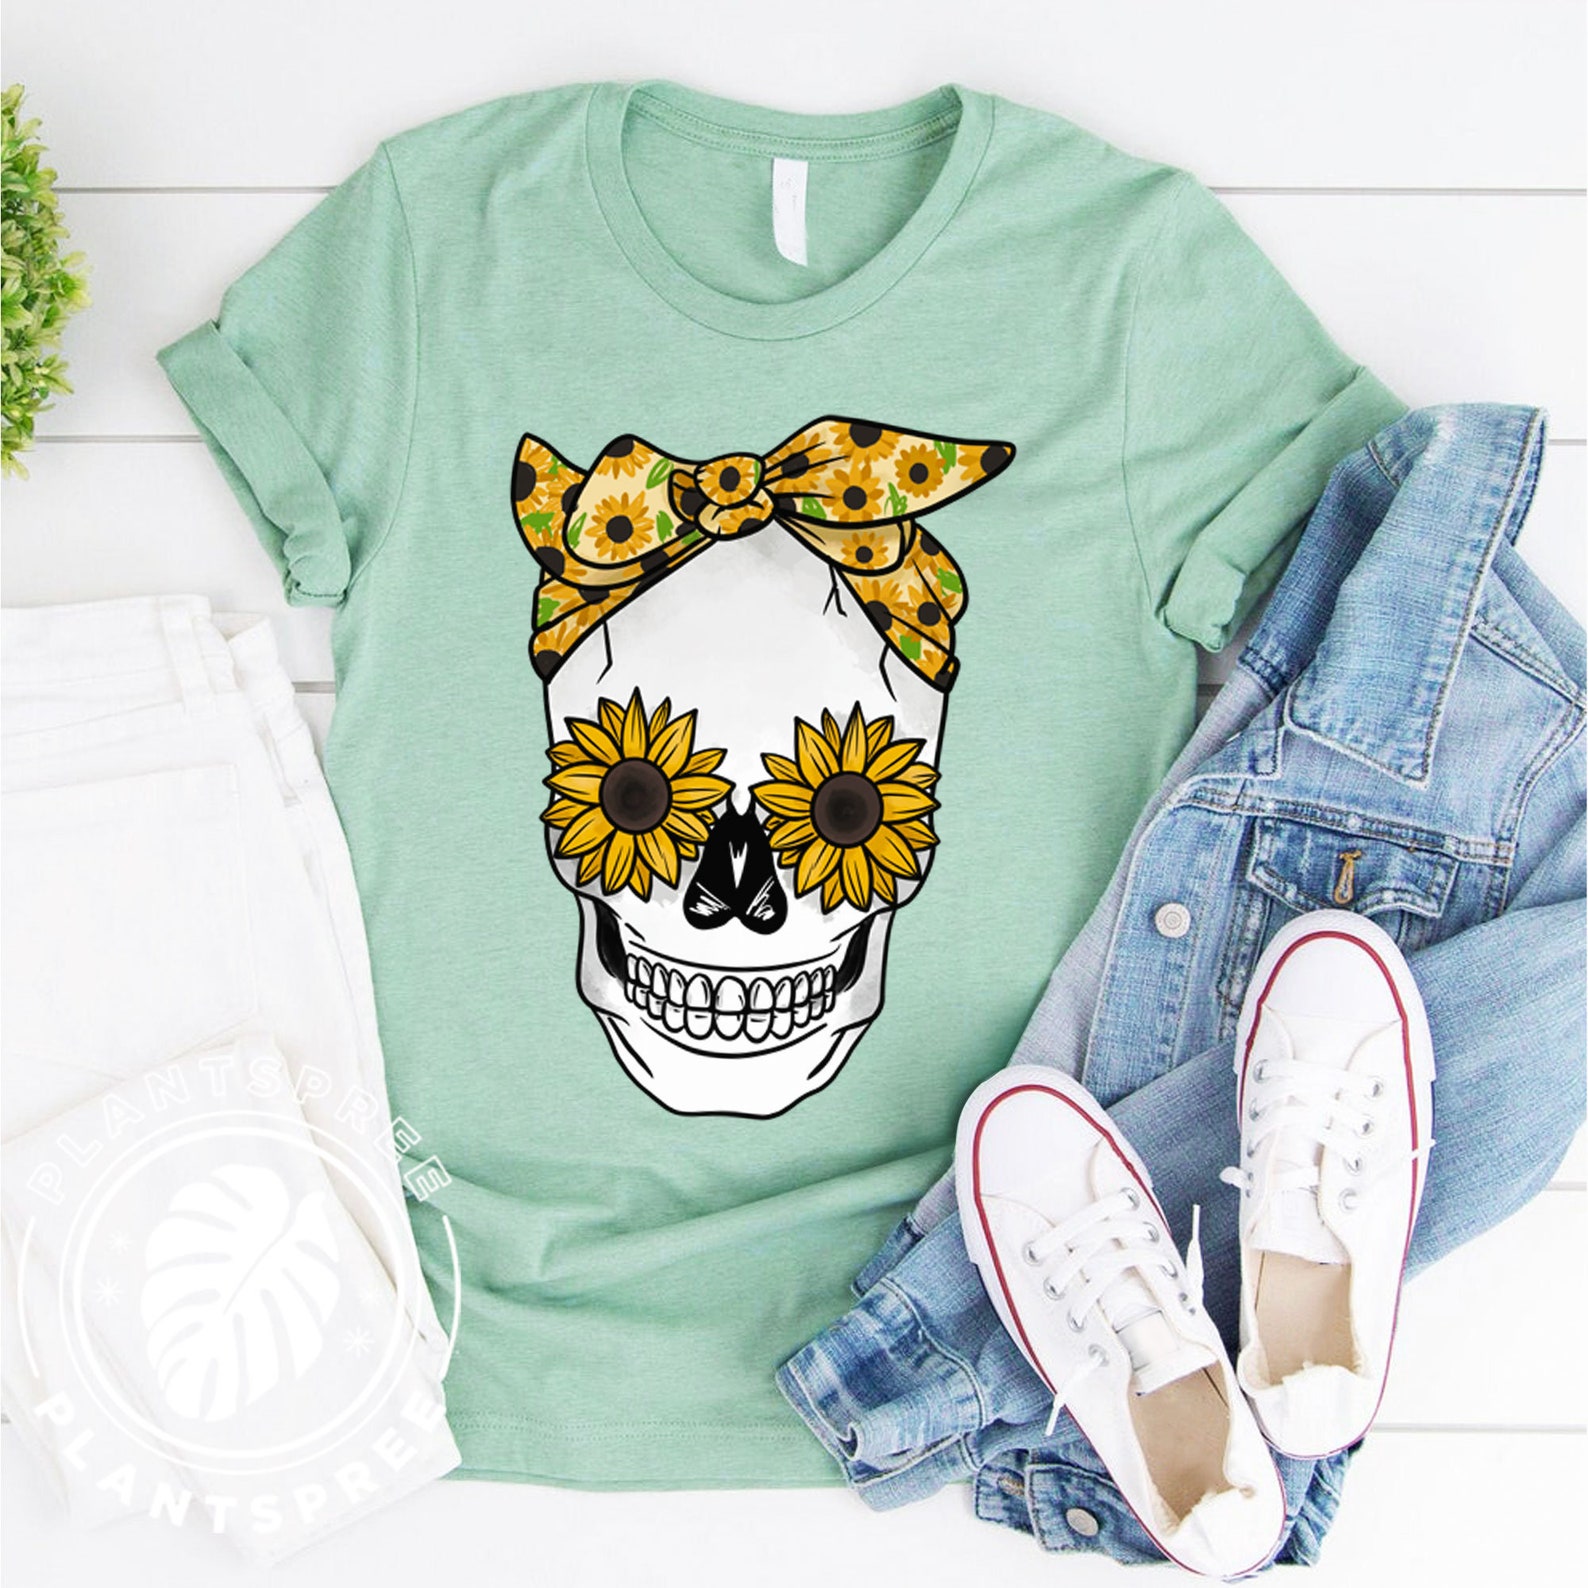 Sunflower Skull Shirt Sunflower Shirt Skull T-shirt | Etsy